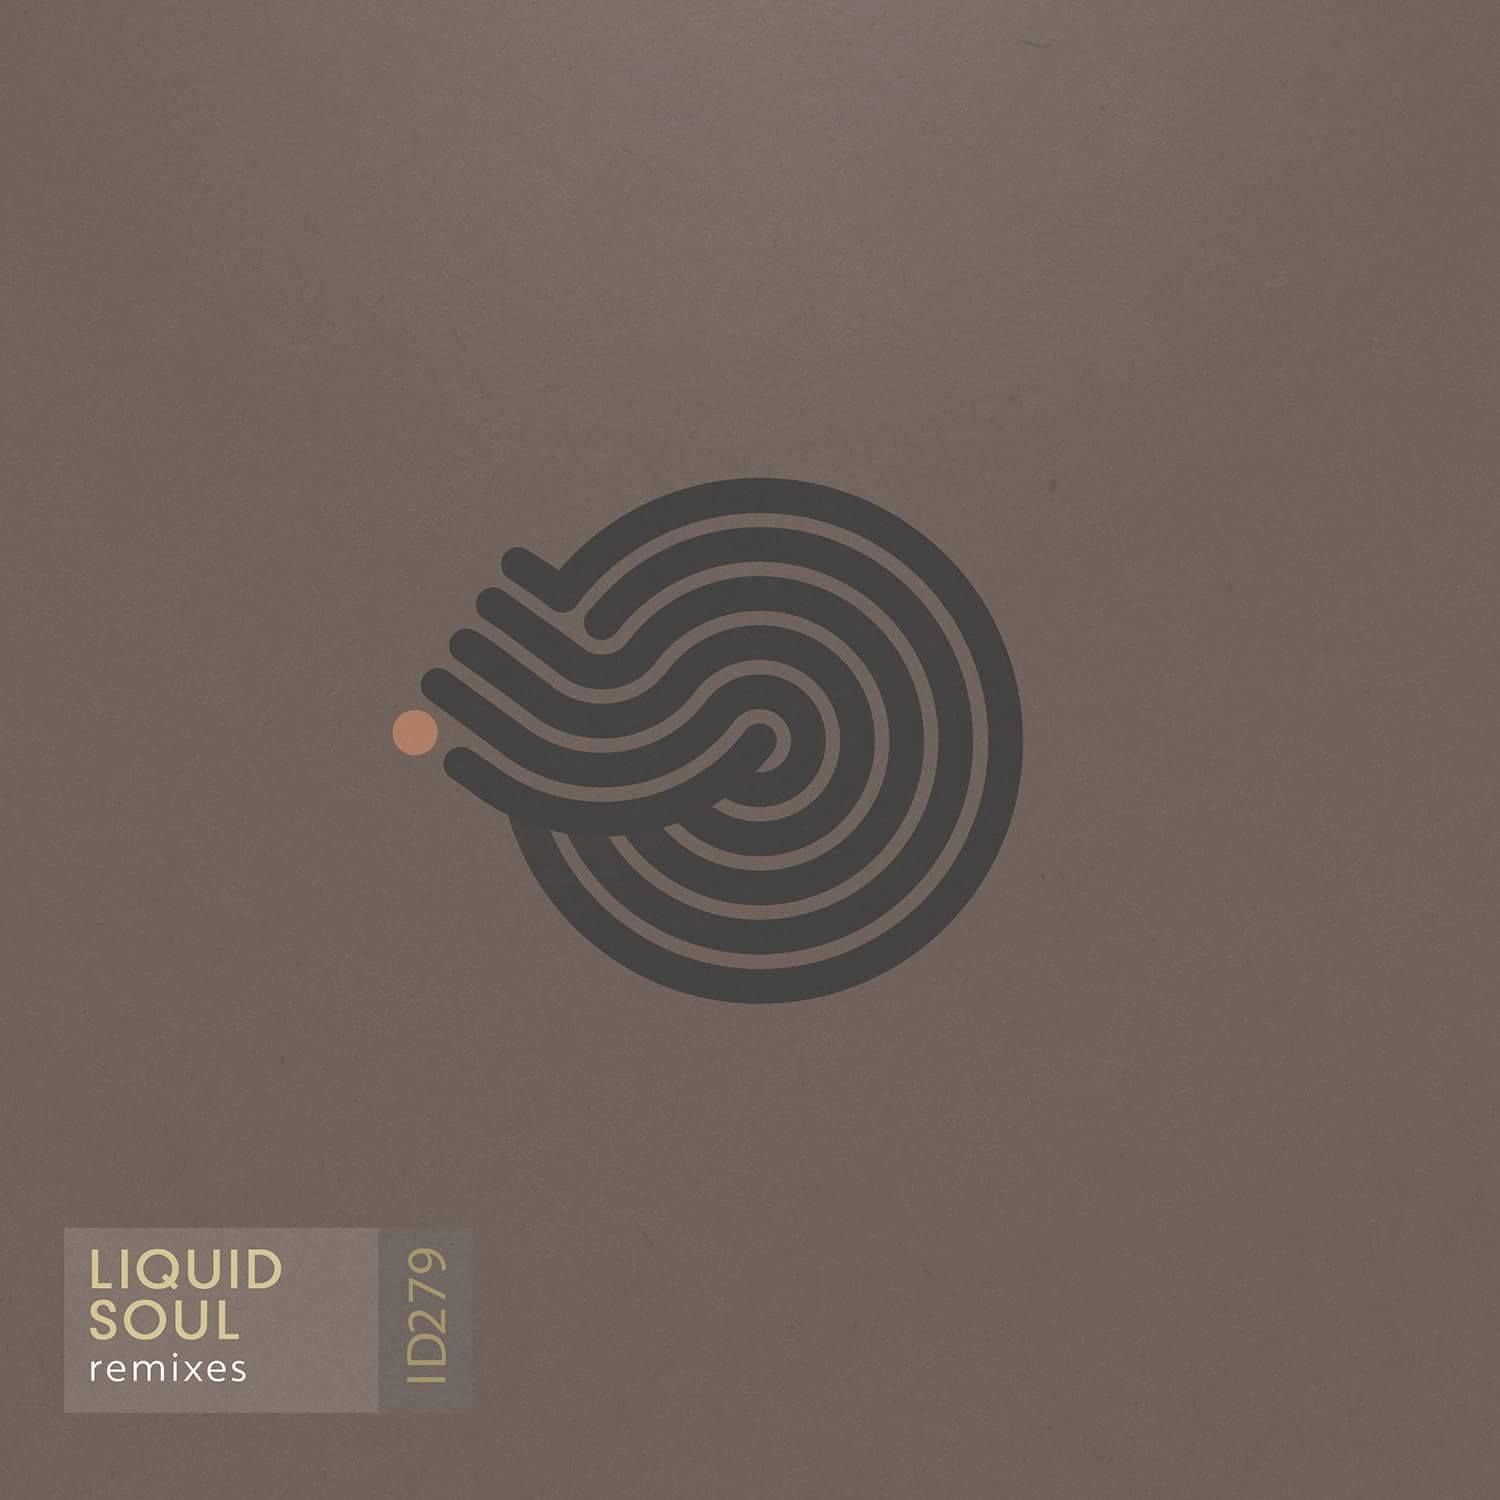 ਡਾਉਨਲੋਡ ਕਰੋ Liquid Soul - Devotion (Suduaya Downbeat remix)